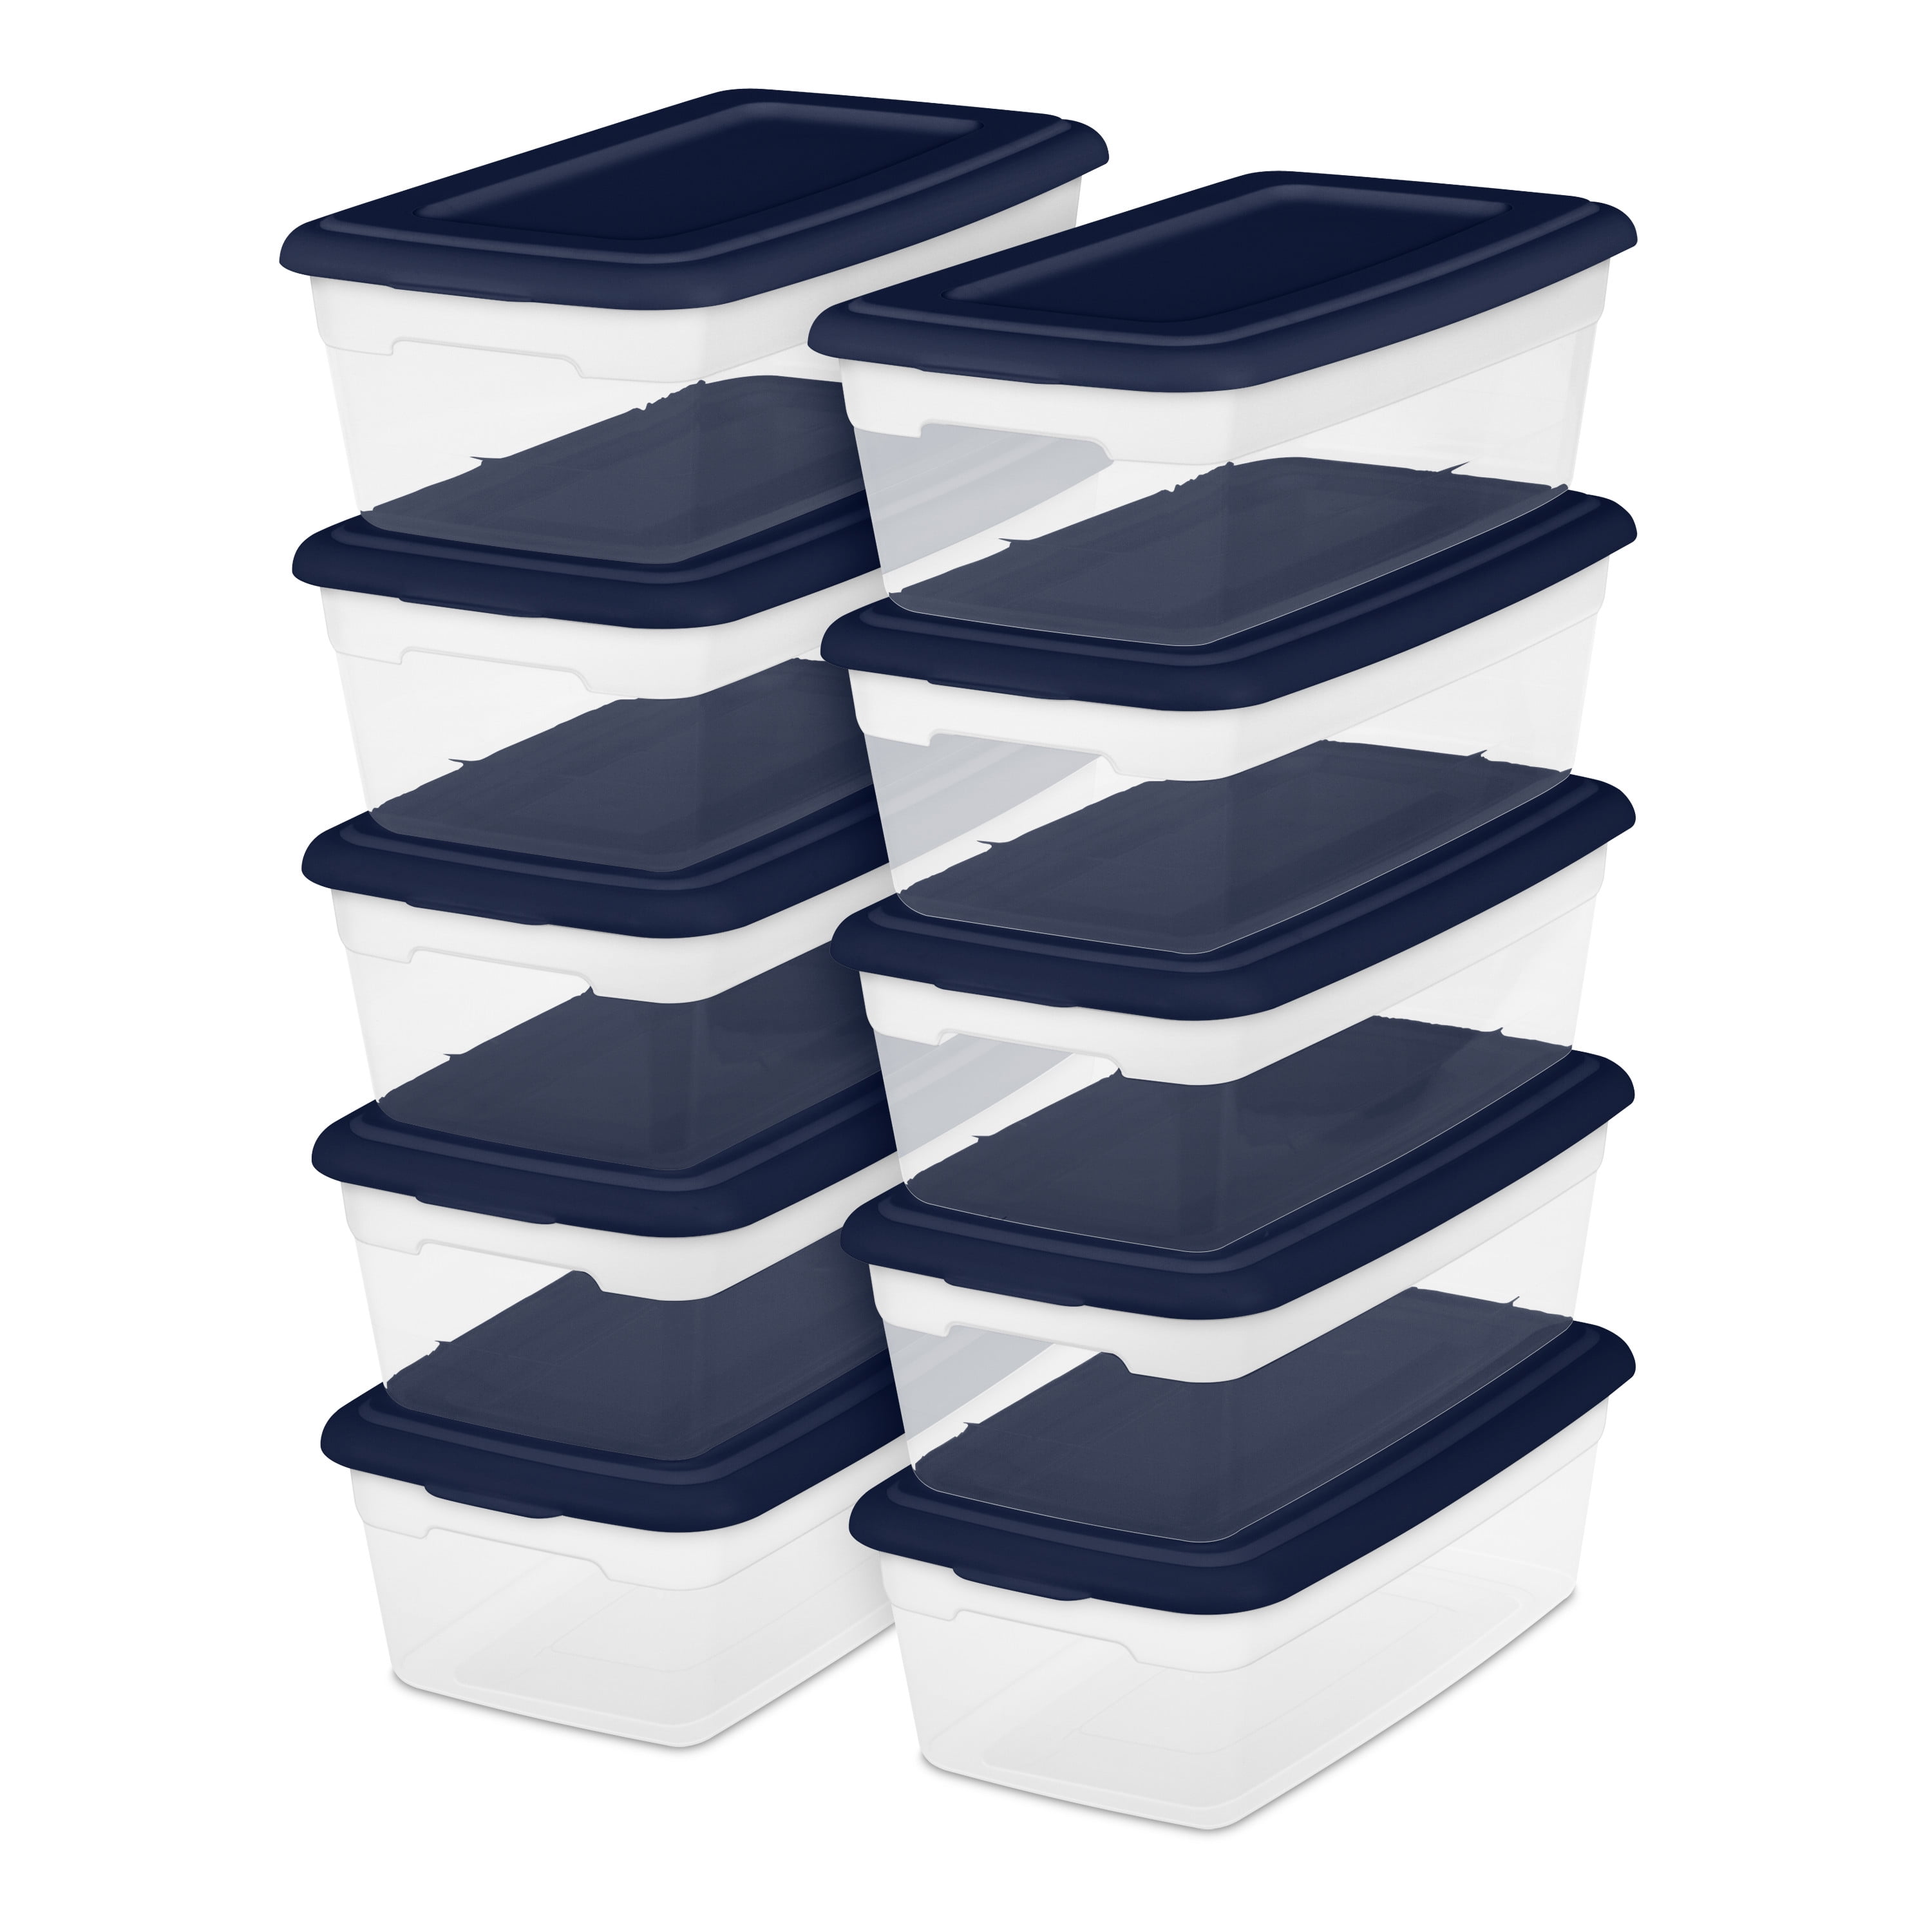 12-24 pieces of shoe box set foldable storage plastic transparent storage box 